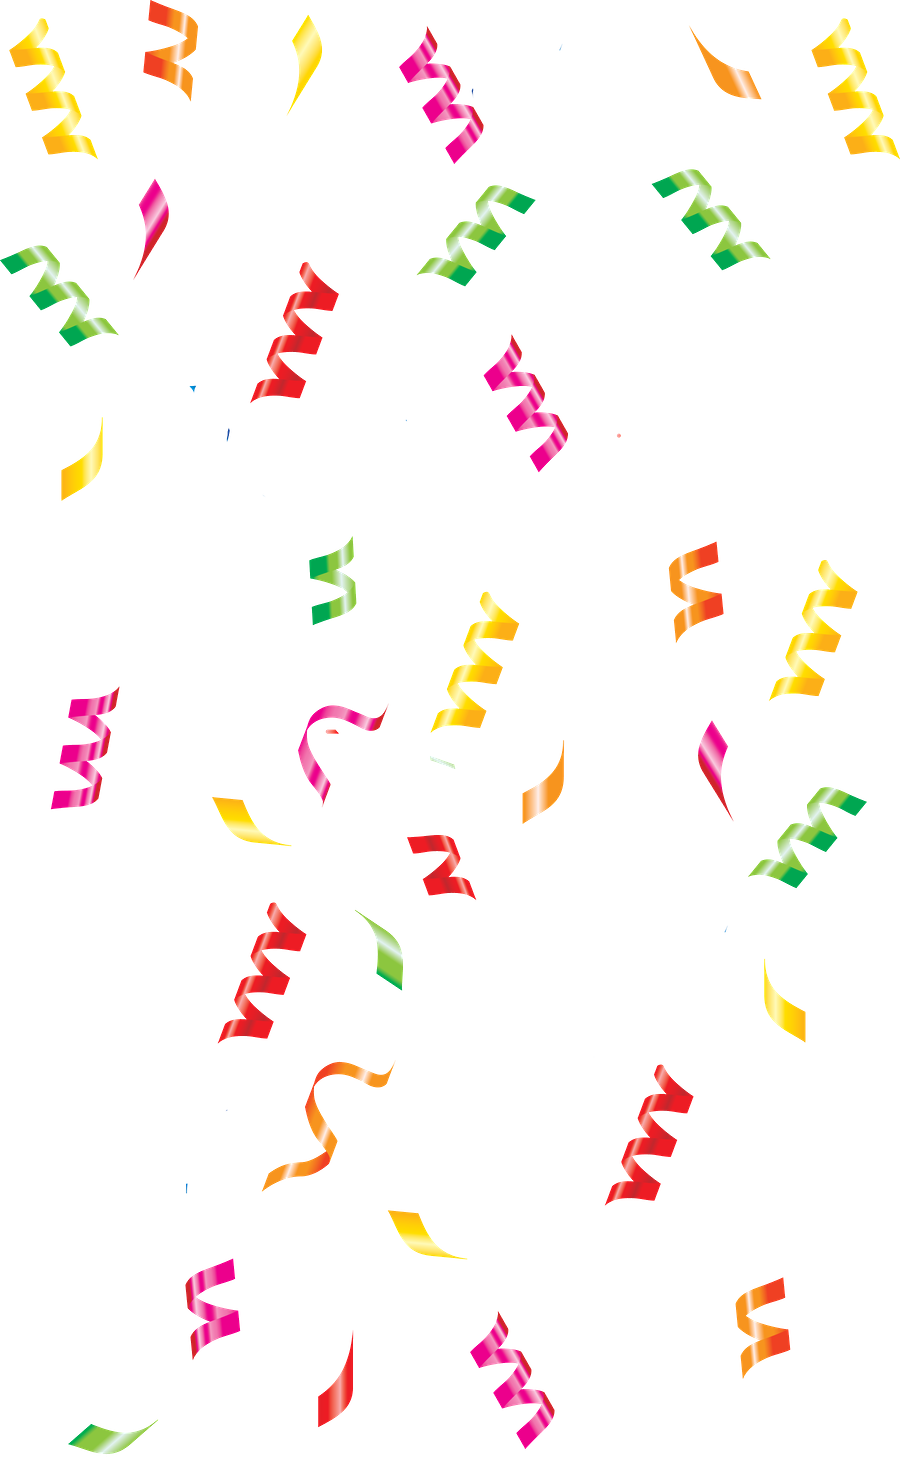 Confettis, célébration